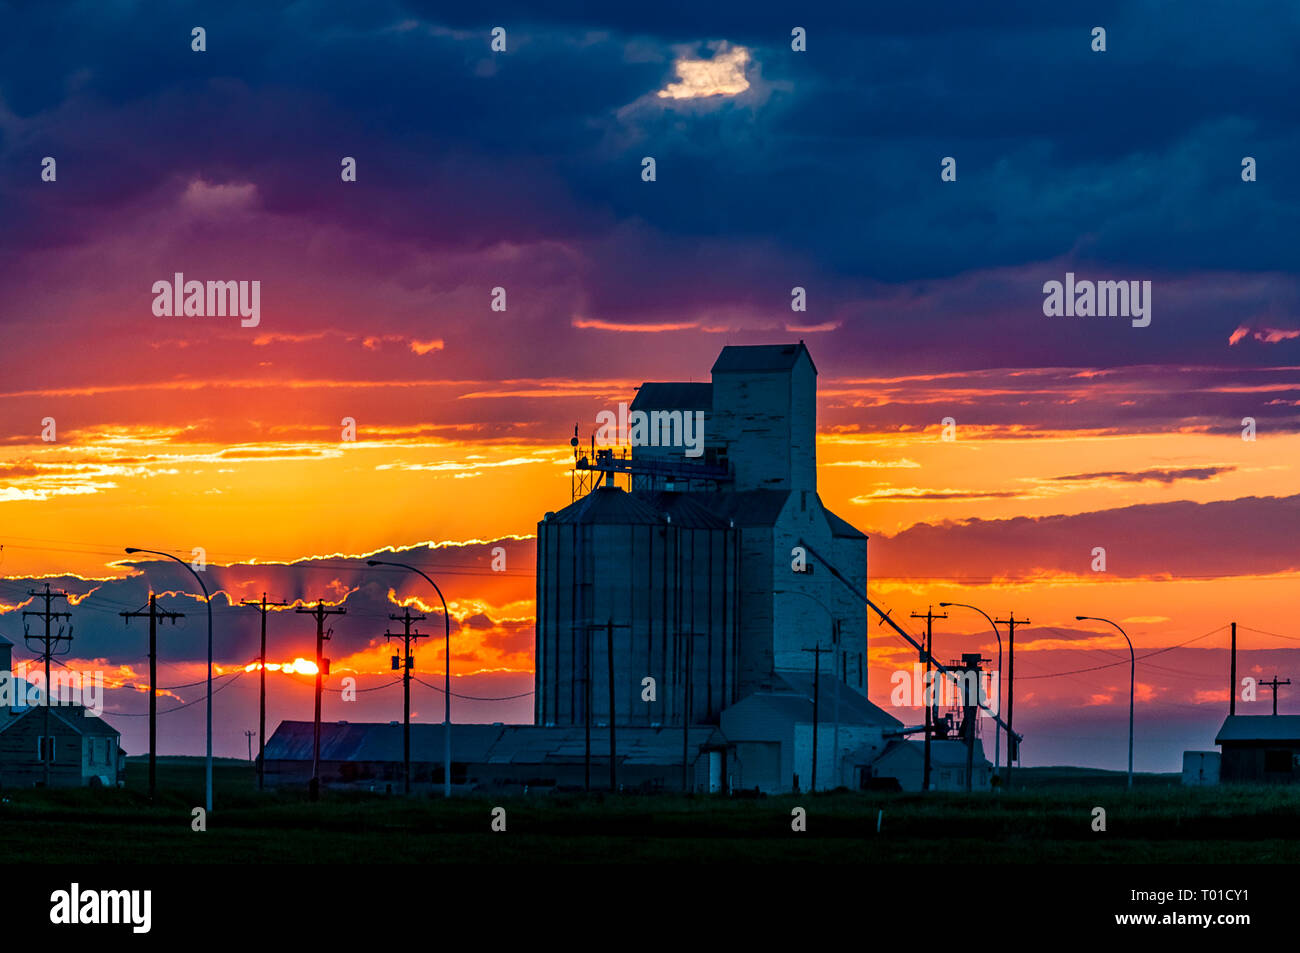 Les silos à grains au coucher du soleil, Warner, Alberta, Canada Banque D'Images